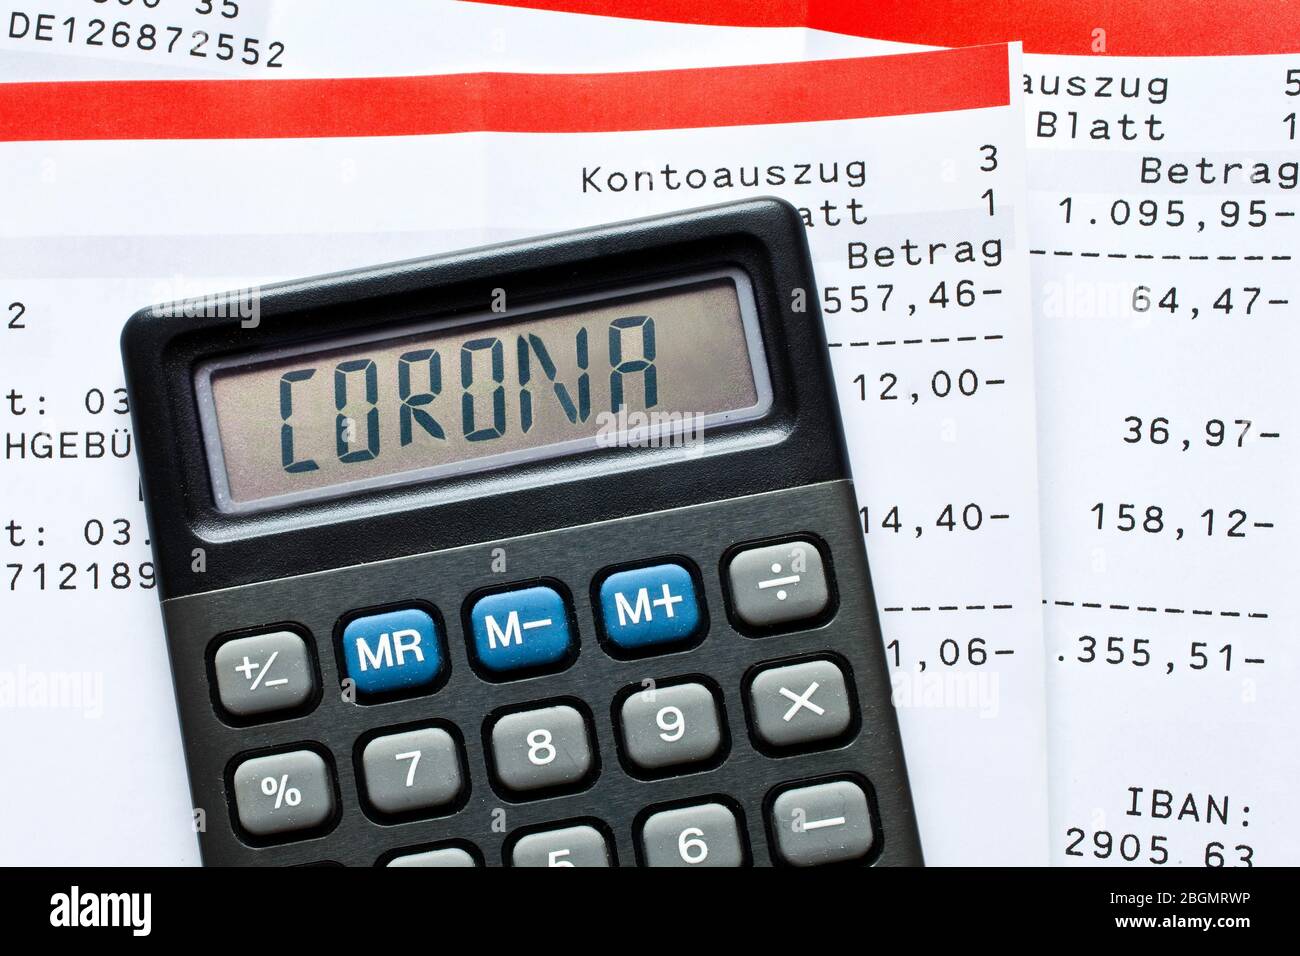 Composizione digitale, calcolatrice con lettere Corona e estratti conto bancari, pagamenti, foto simbolo per gli effetti del Coronavirus sull'economia Foto Stock